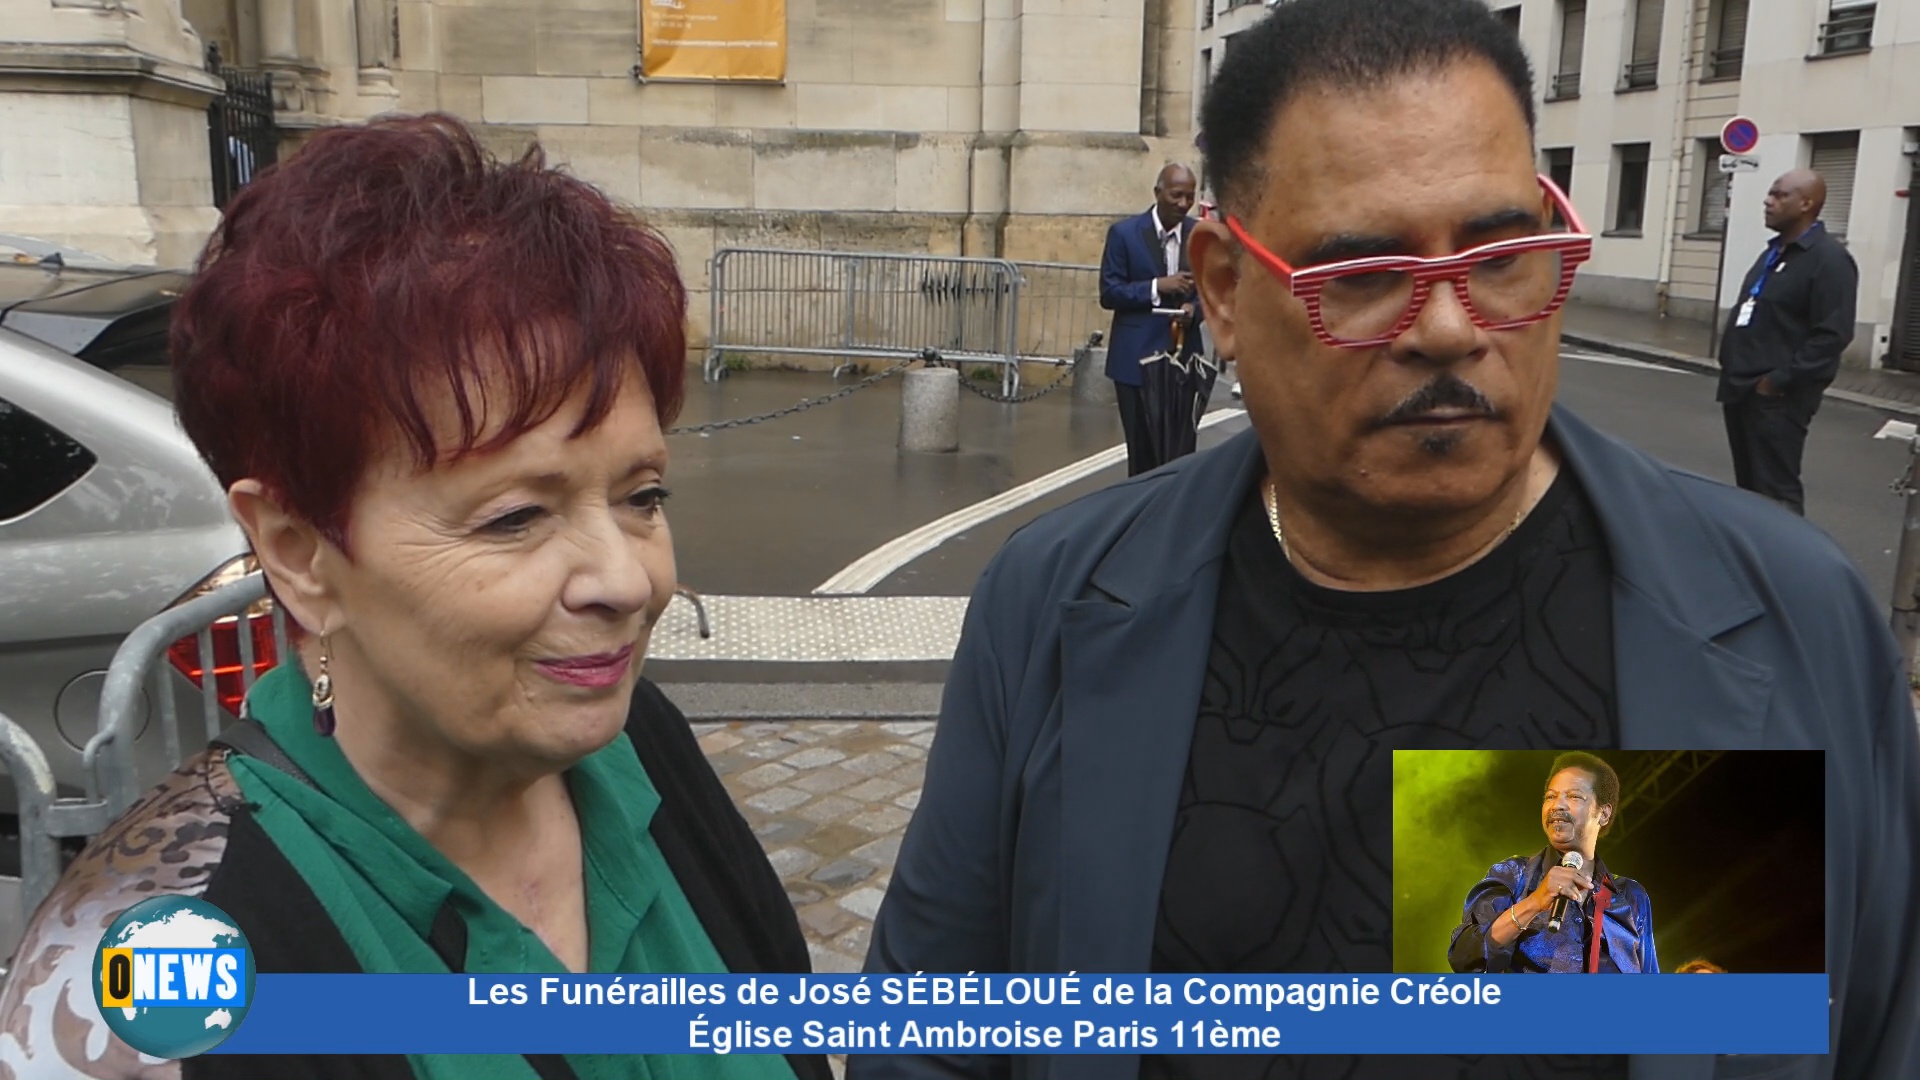 [Vidéo] Les Funérailles de José SÉBÉLOUÉ de la Compagnie Créole. Église Saint Ambroise à Paris 11ème